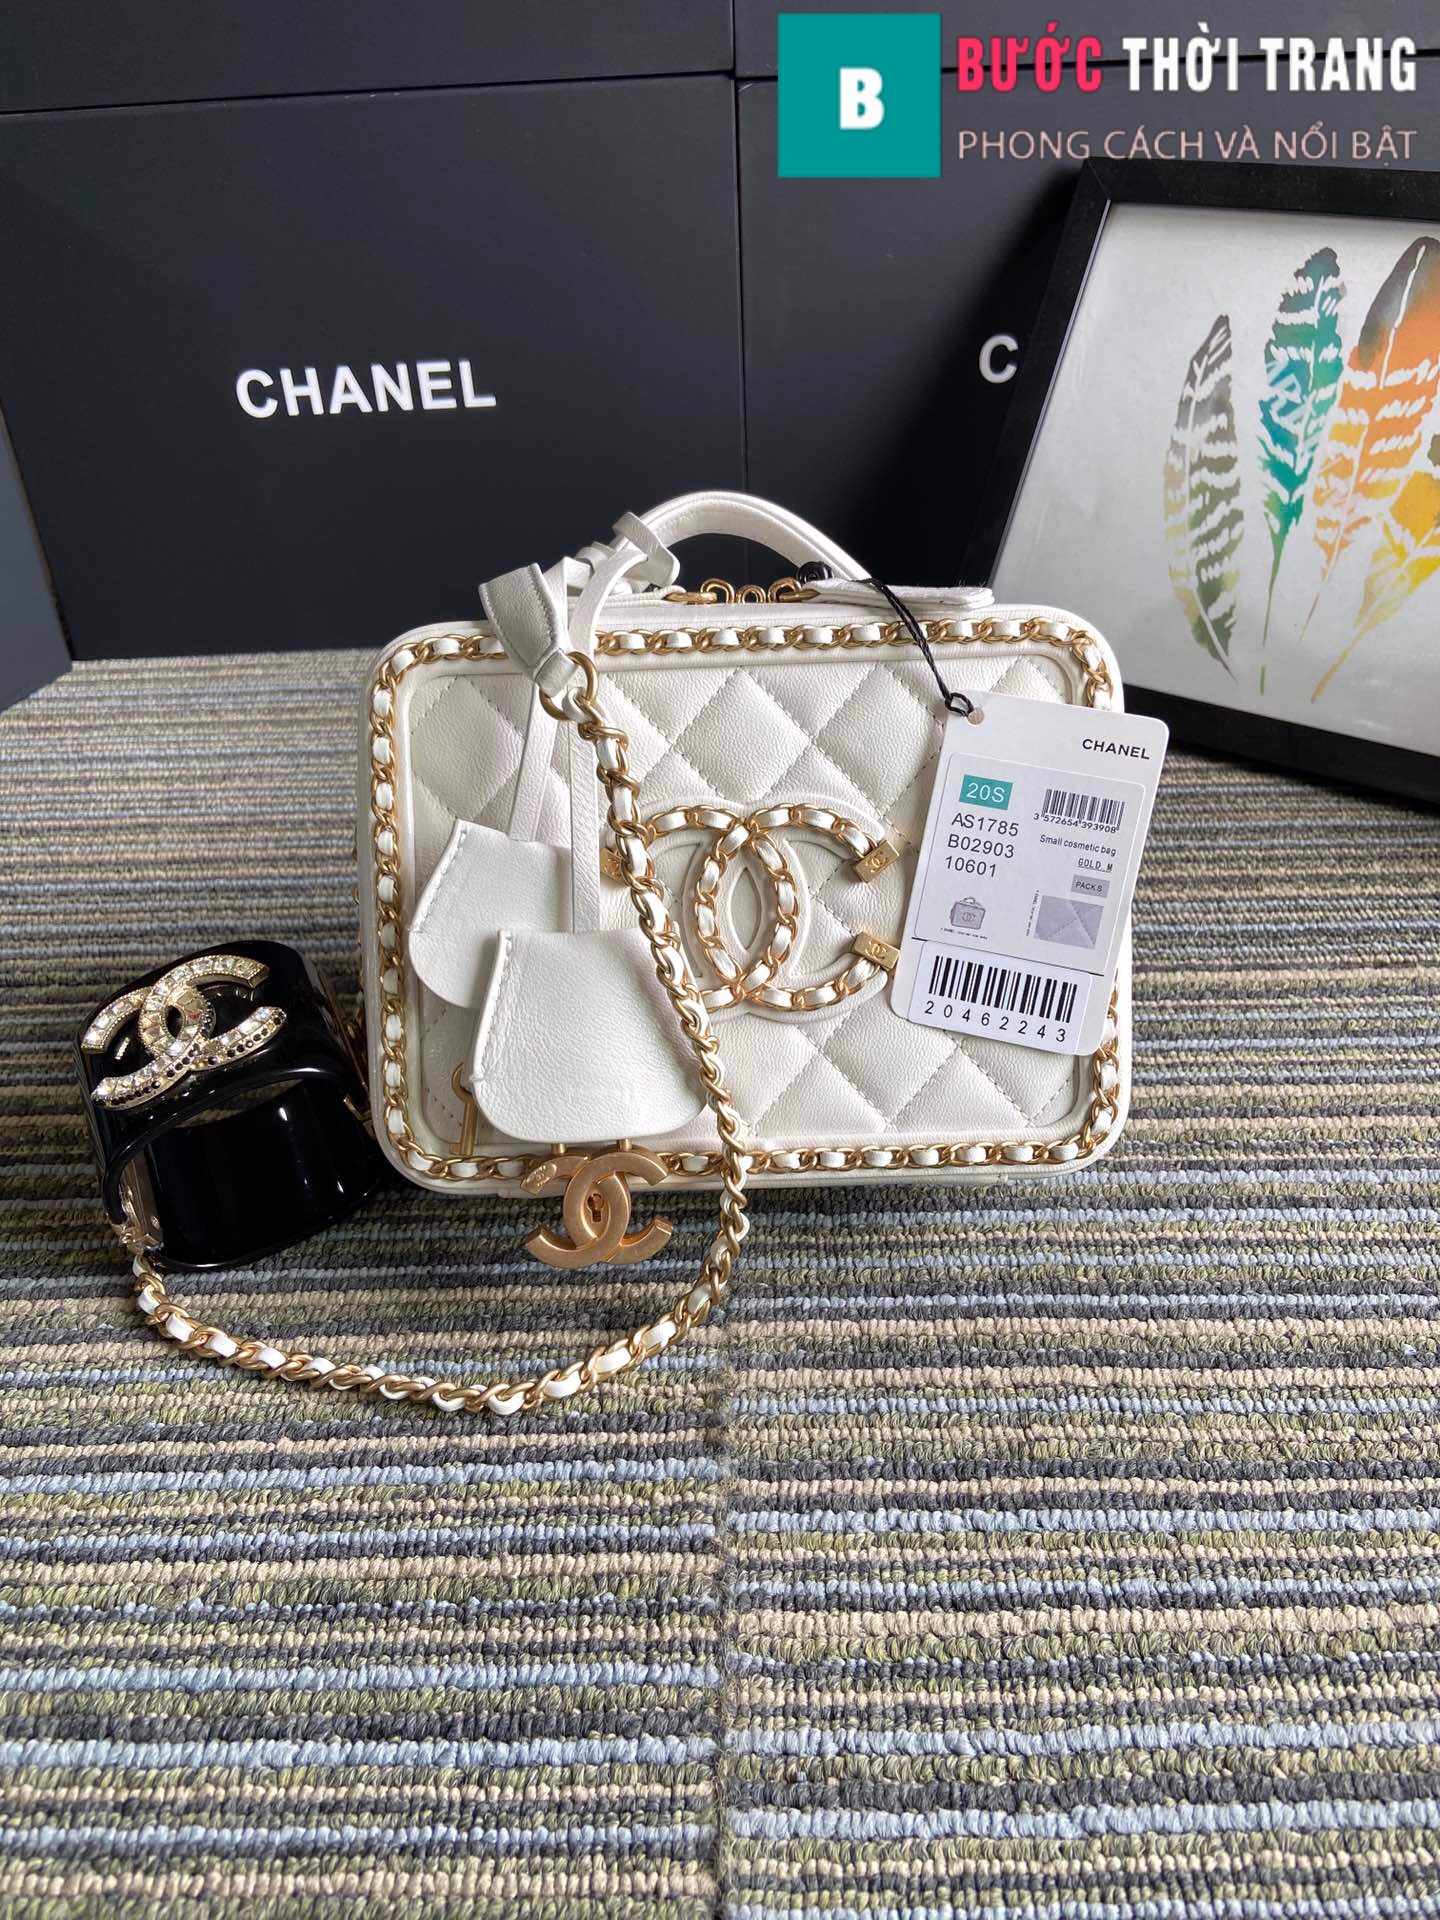 Túi xách Chanel Woc Falp Bag siêu cấp da cừu màu trắng size 19 cm 33814   Túi xách cao cấp những mẫu túi siêu cấp like authentic cực đẹp